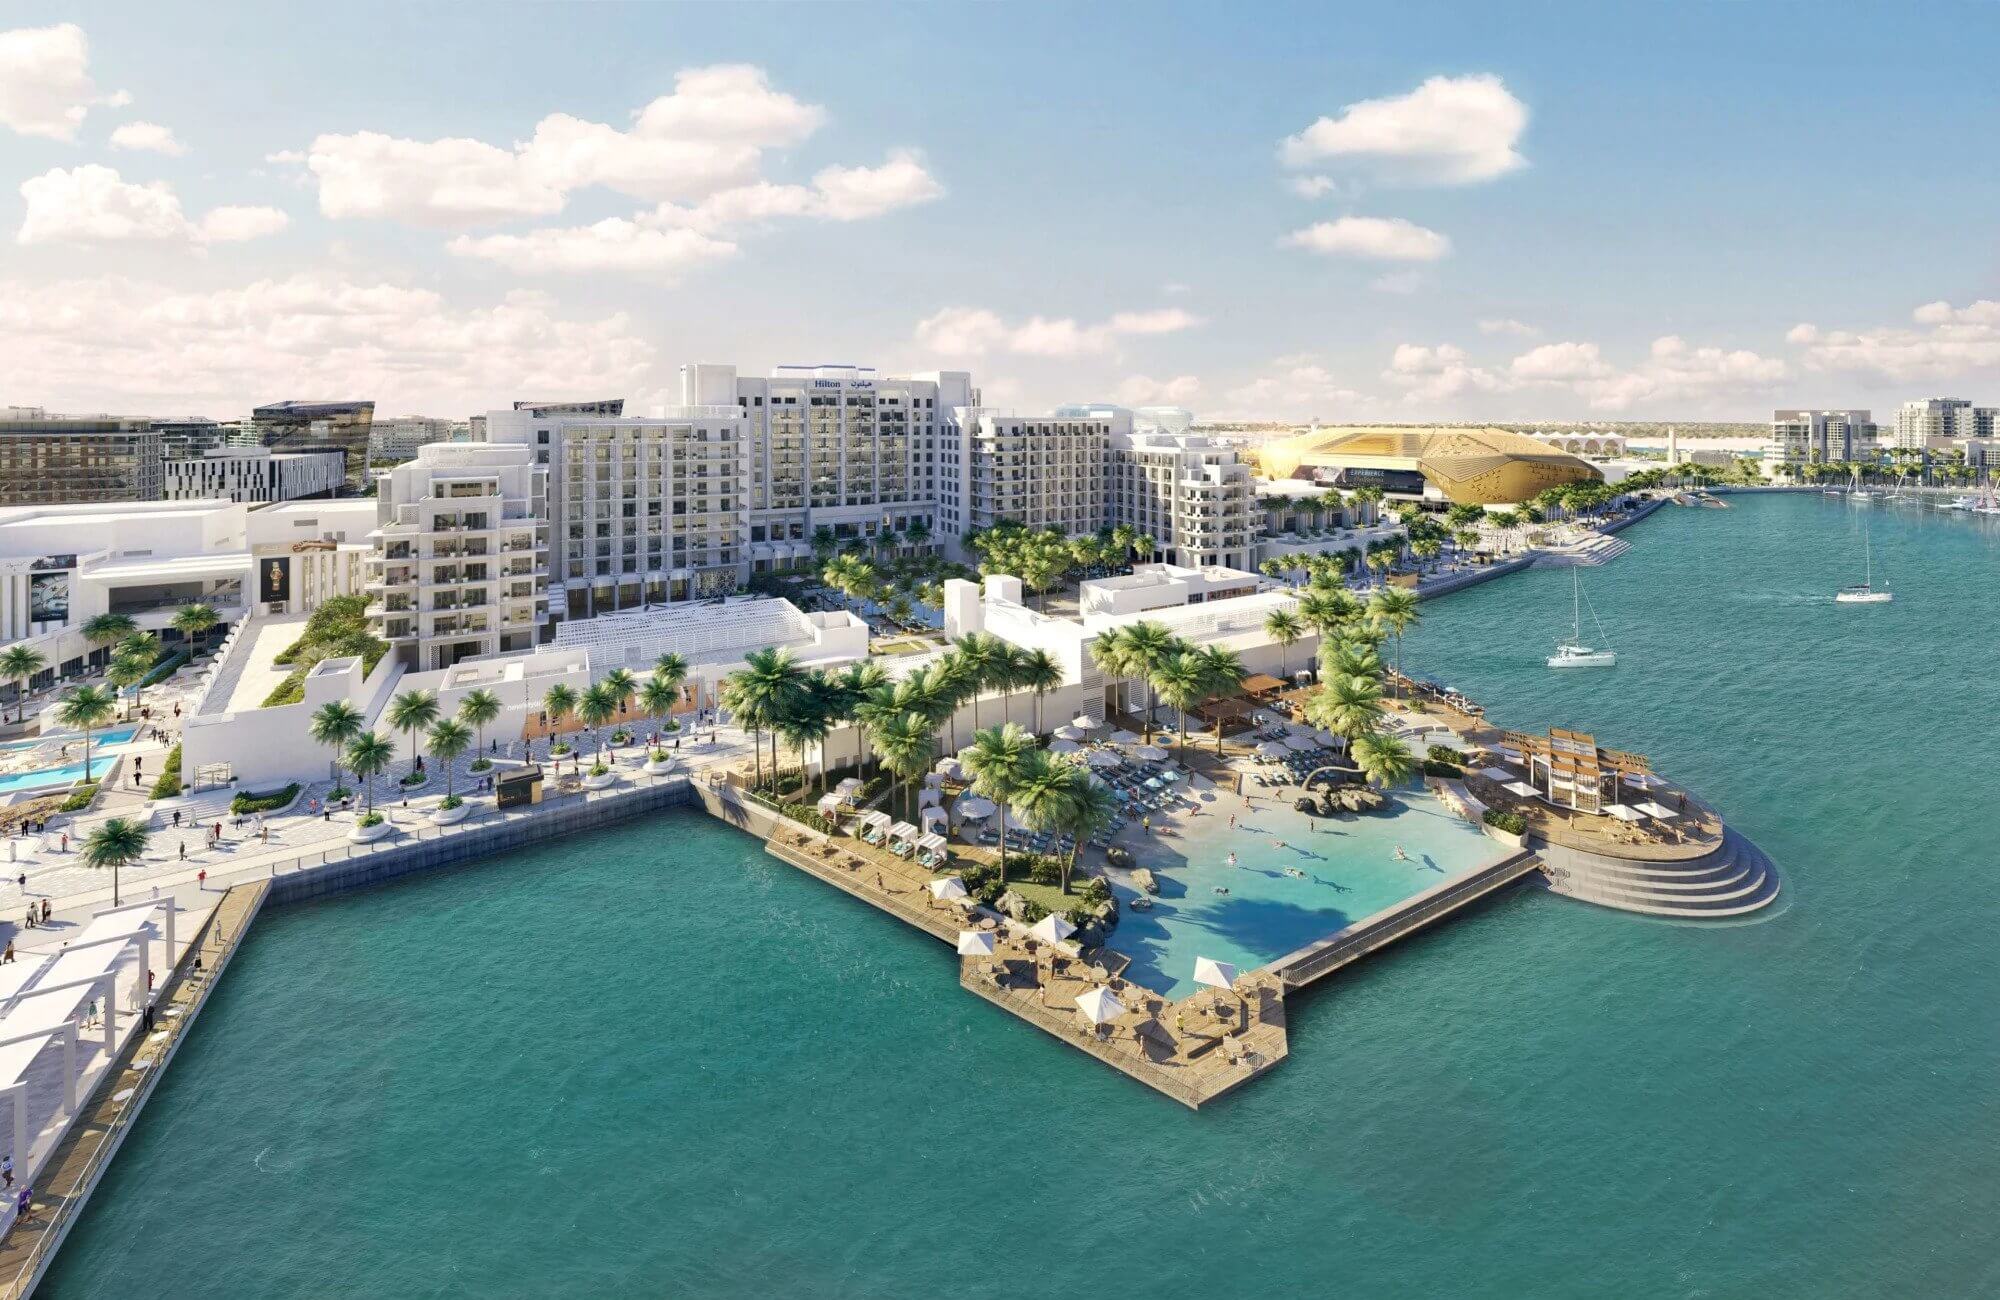 Hilton Abu Dhabi Yas Island Hotel